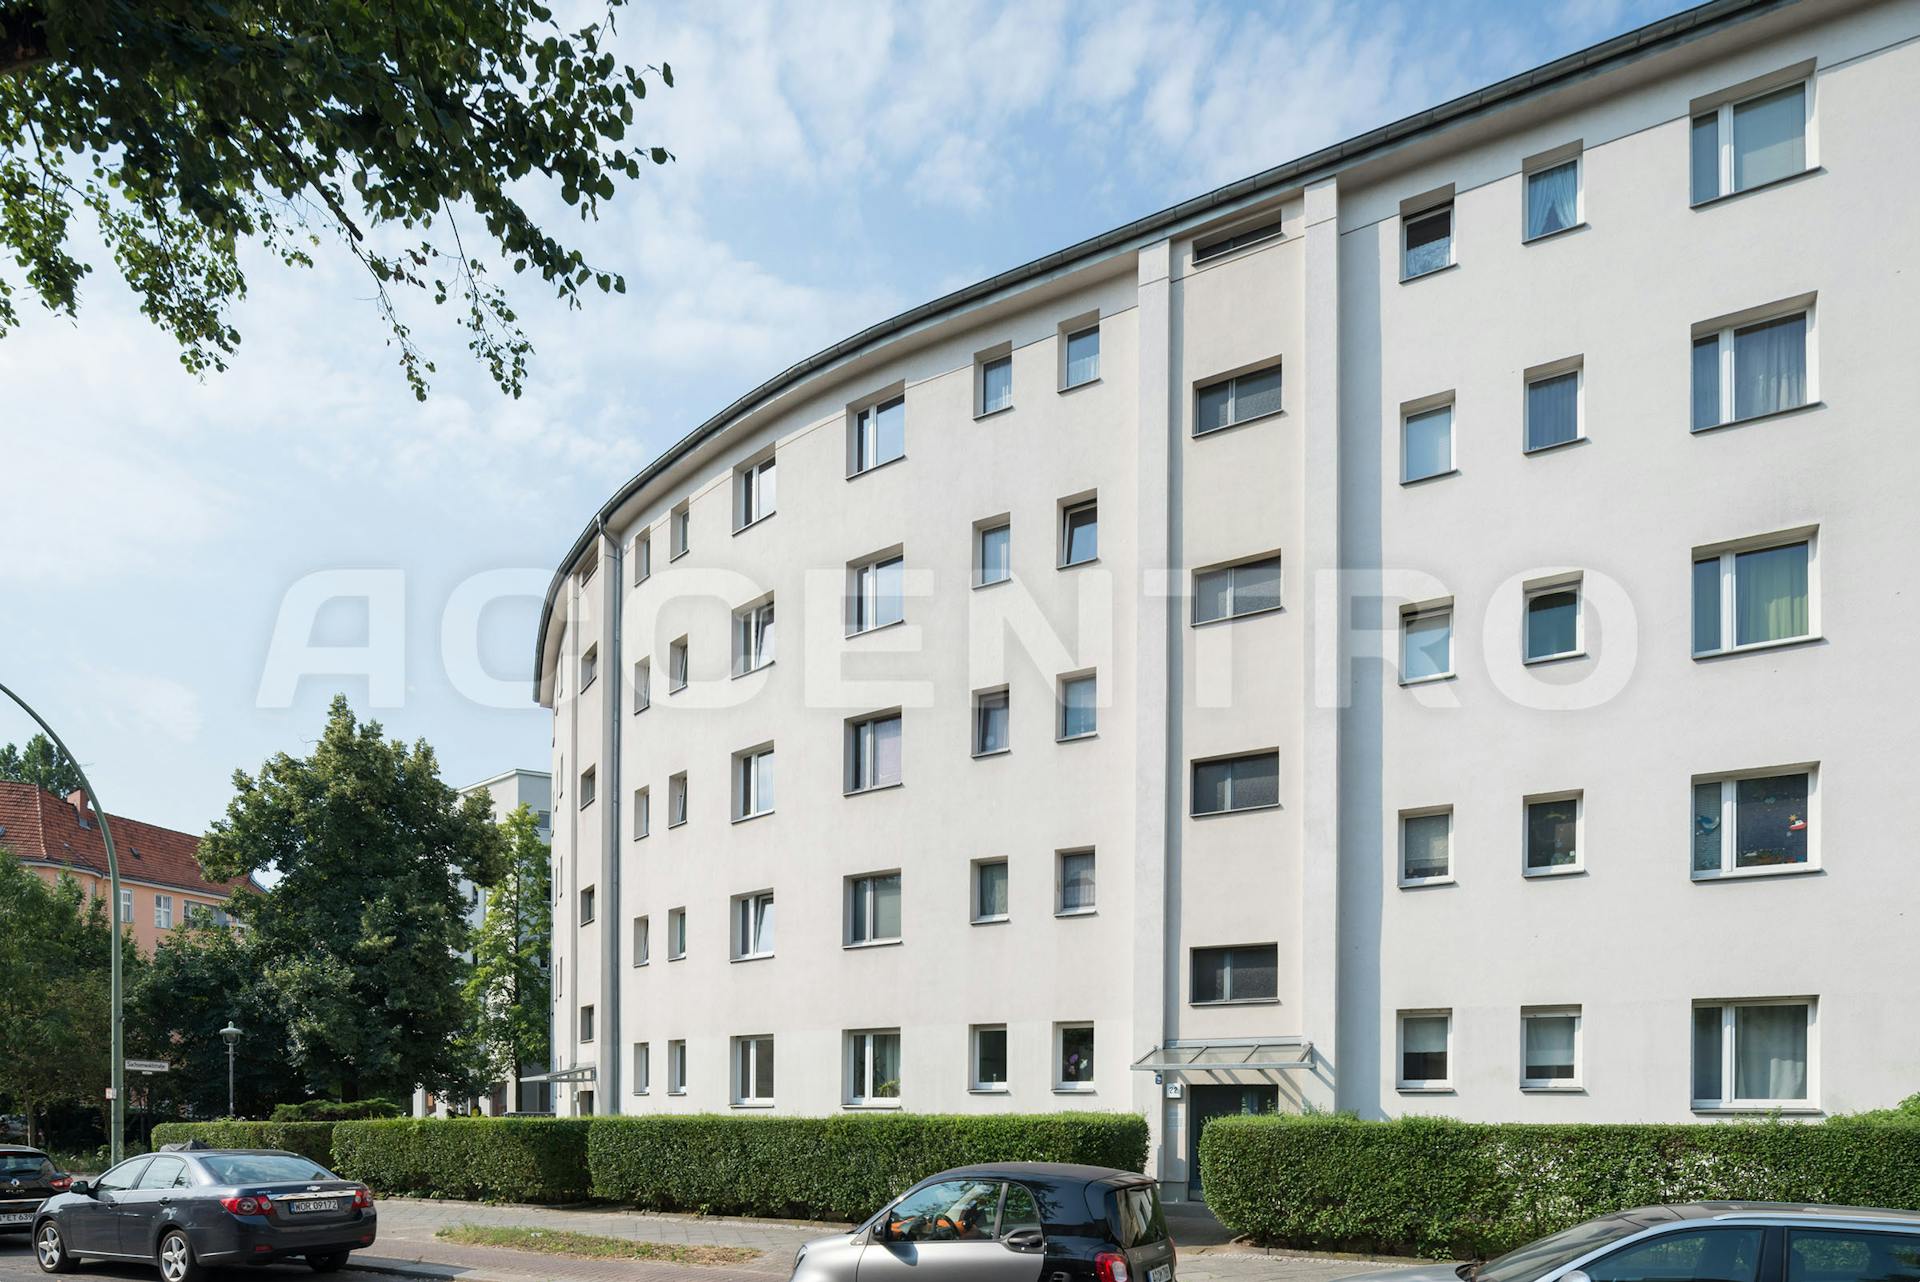 Eigentumswohnung Berlin Steglitz Thorwaldsenstr 22 4049